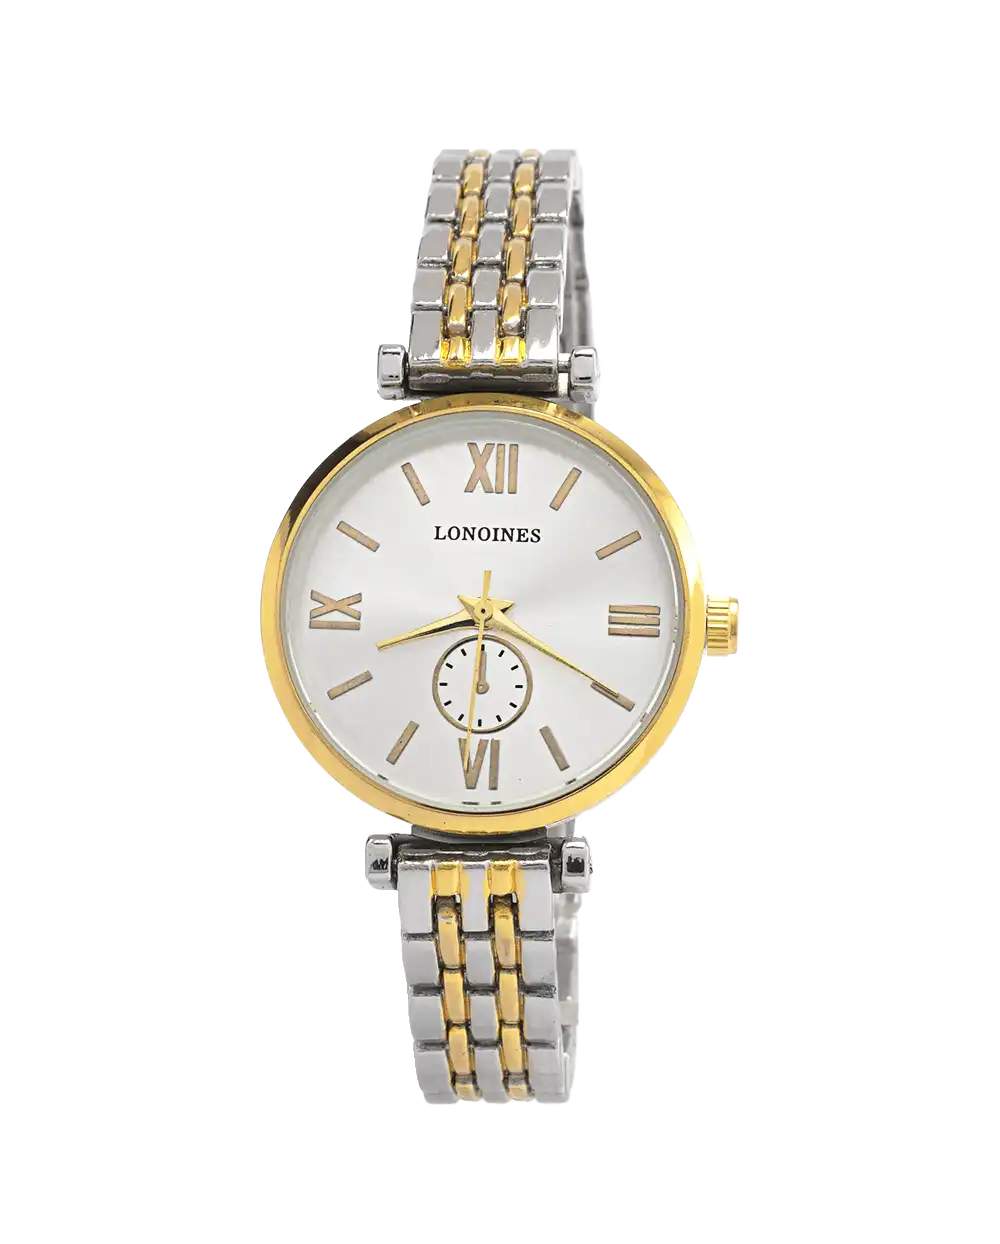 خرید ساعت مچی زنانه لونجین LONGINES مدل 1770 رنگ نقره ای طلایی مناسب برای خانم ها و دختران به همراه جعبه و ارسال رایگان به سراسر ایران درب منزل